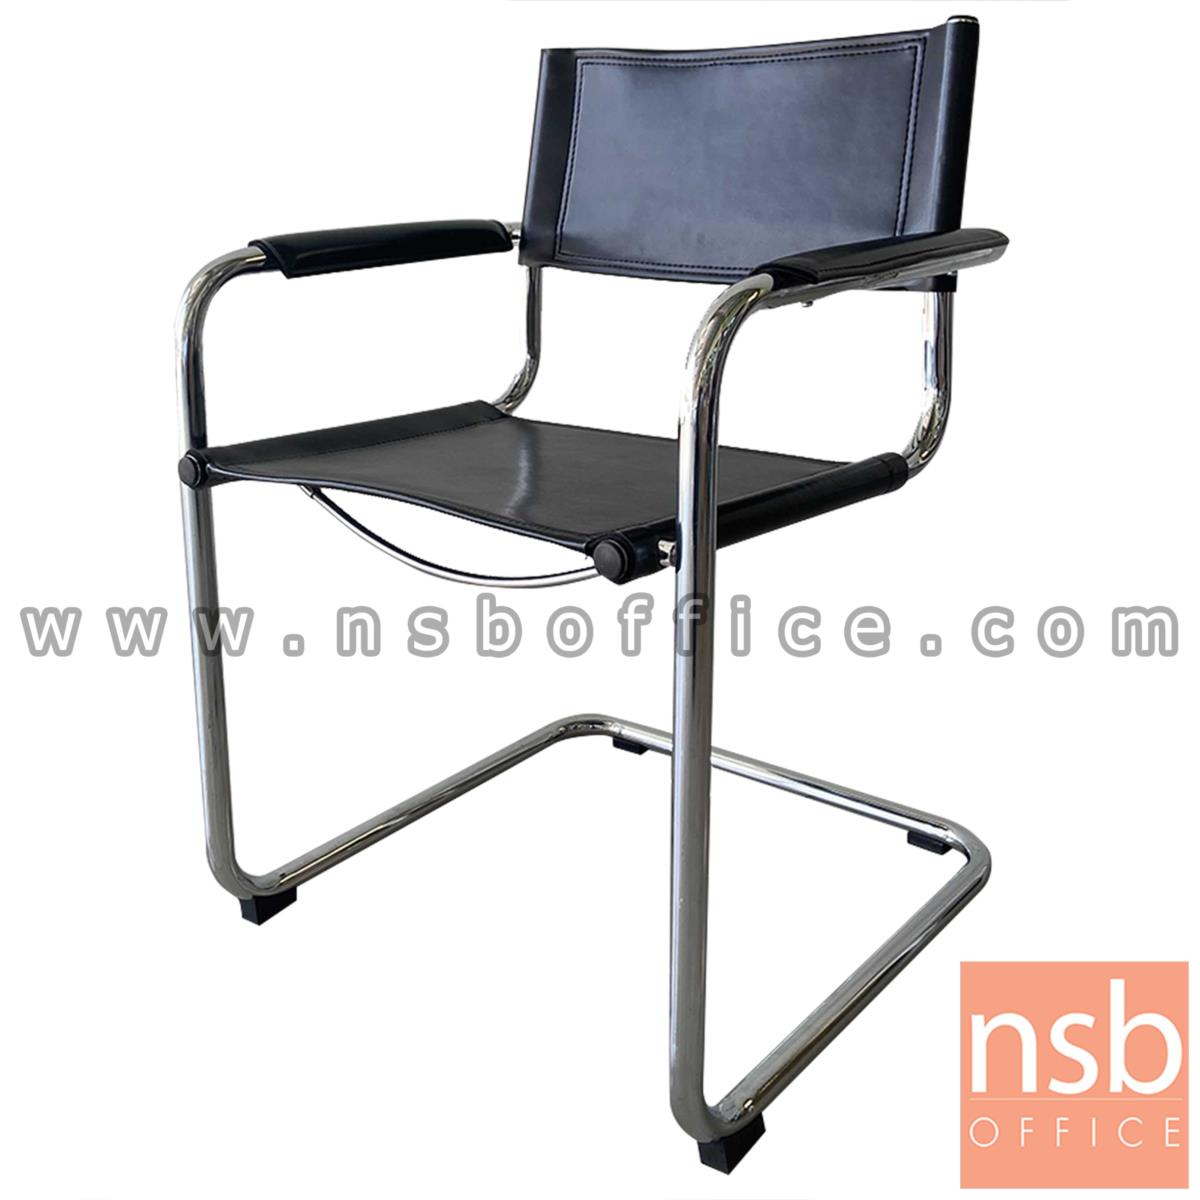 G08A304:เก้าอี้อเนกประสงค์ รุ่น blackmagic (แบล็กเมจิก)  โครงเหล็กโครเมี่ยม